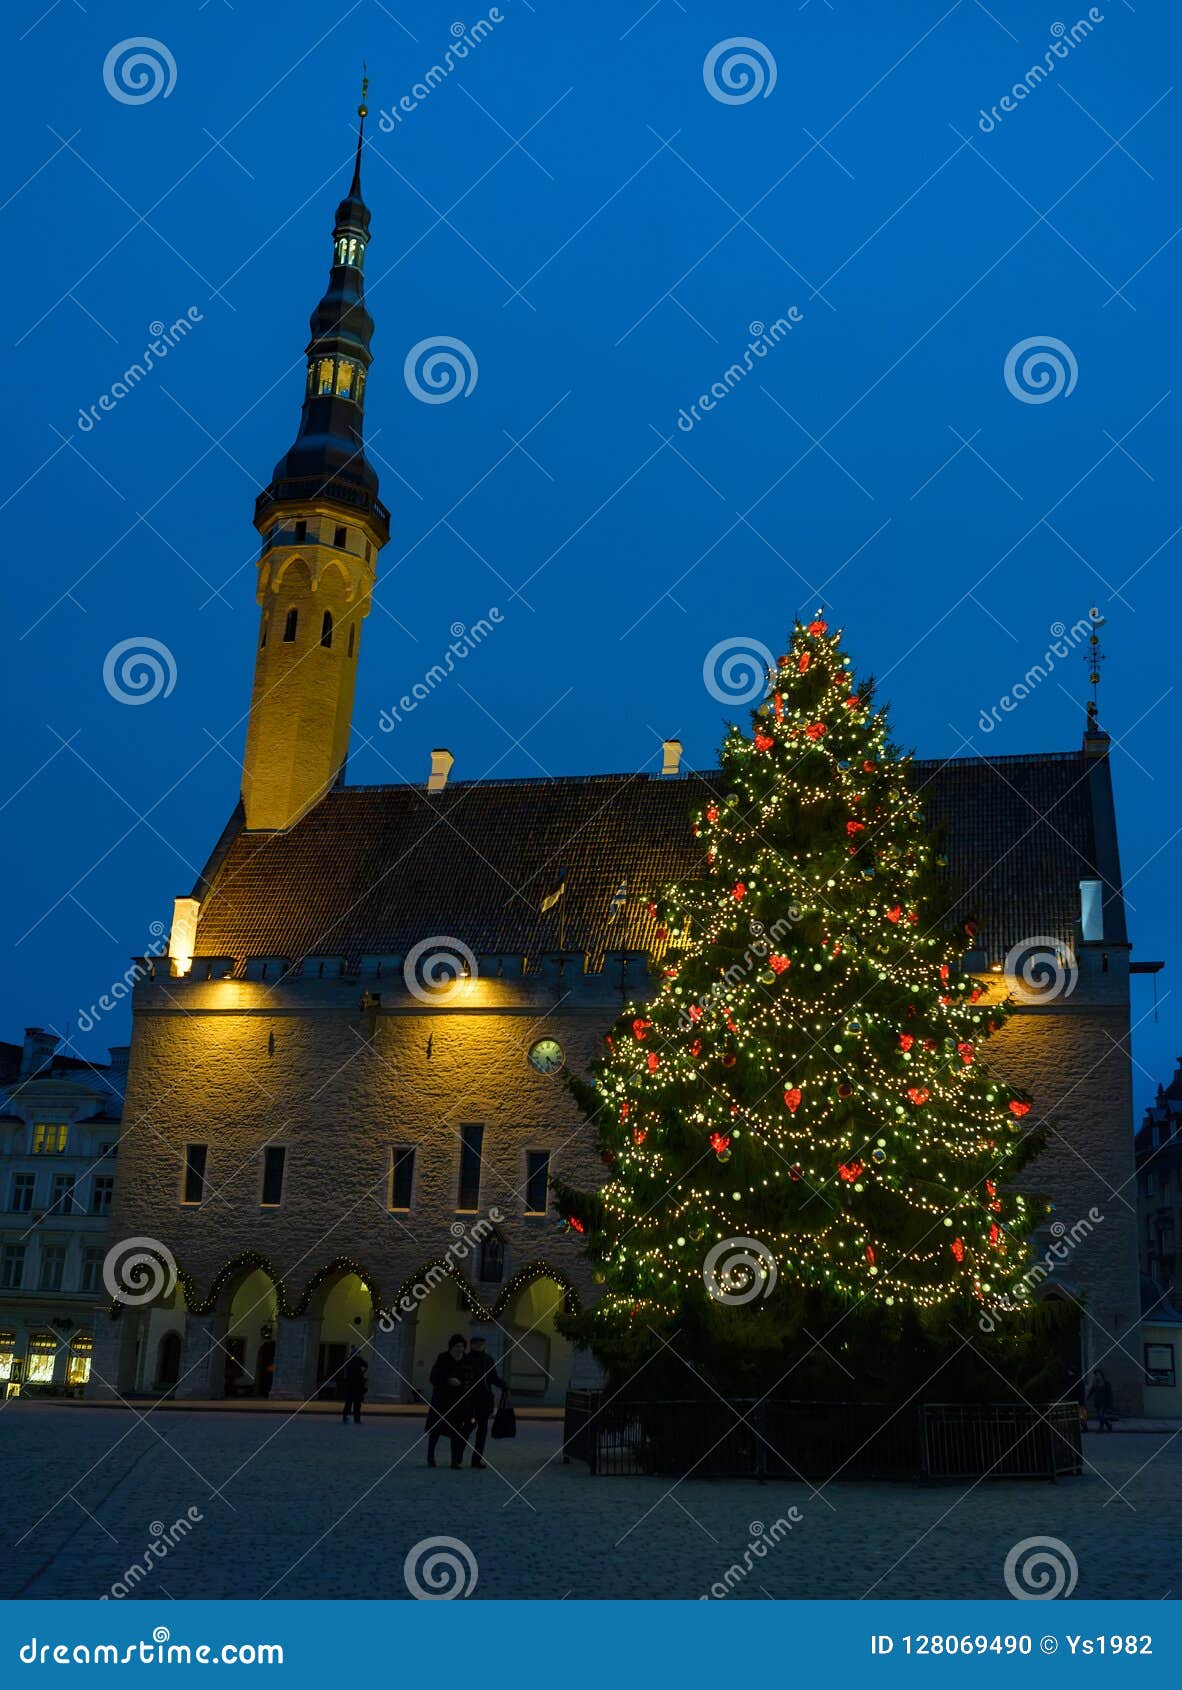 Christmas Fair In Old Tallinn, Christmas Tree On The ...